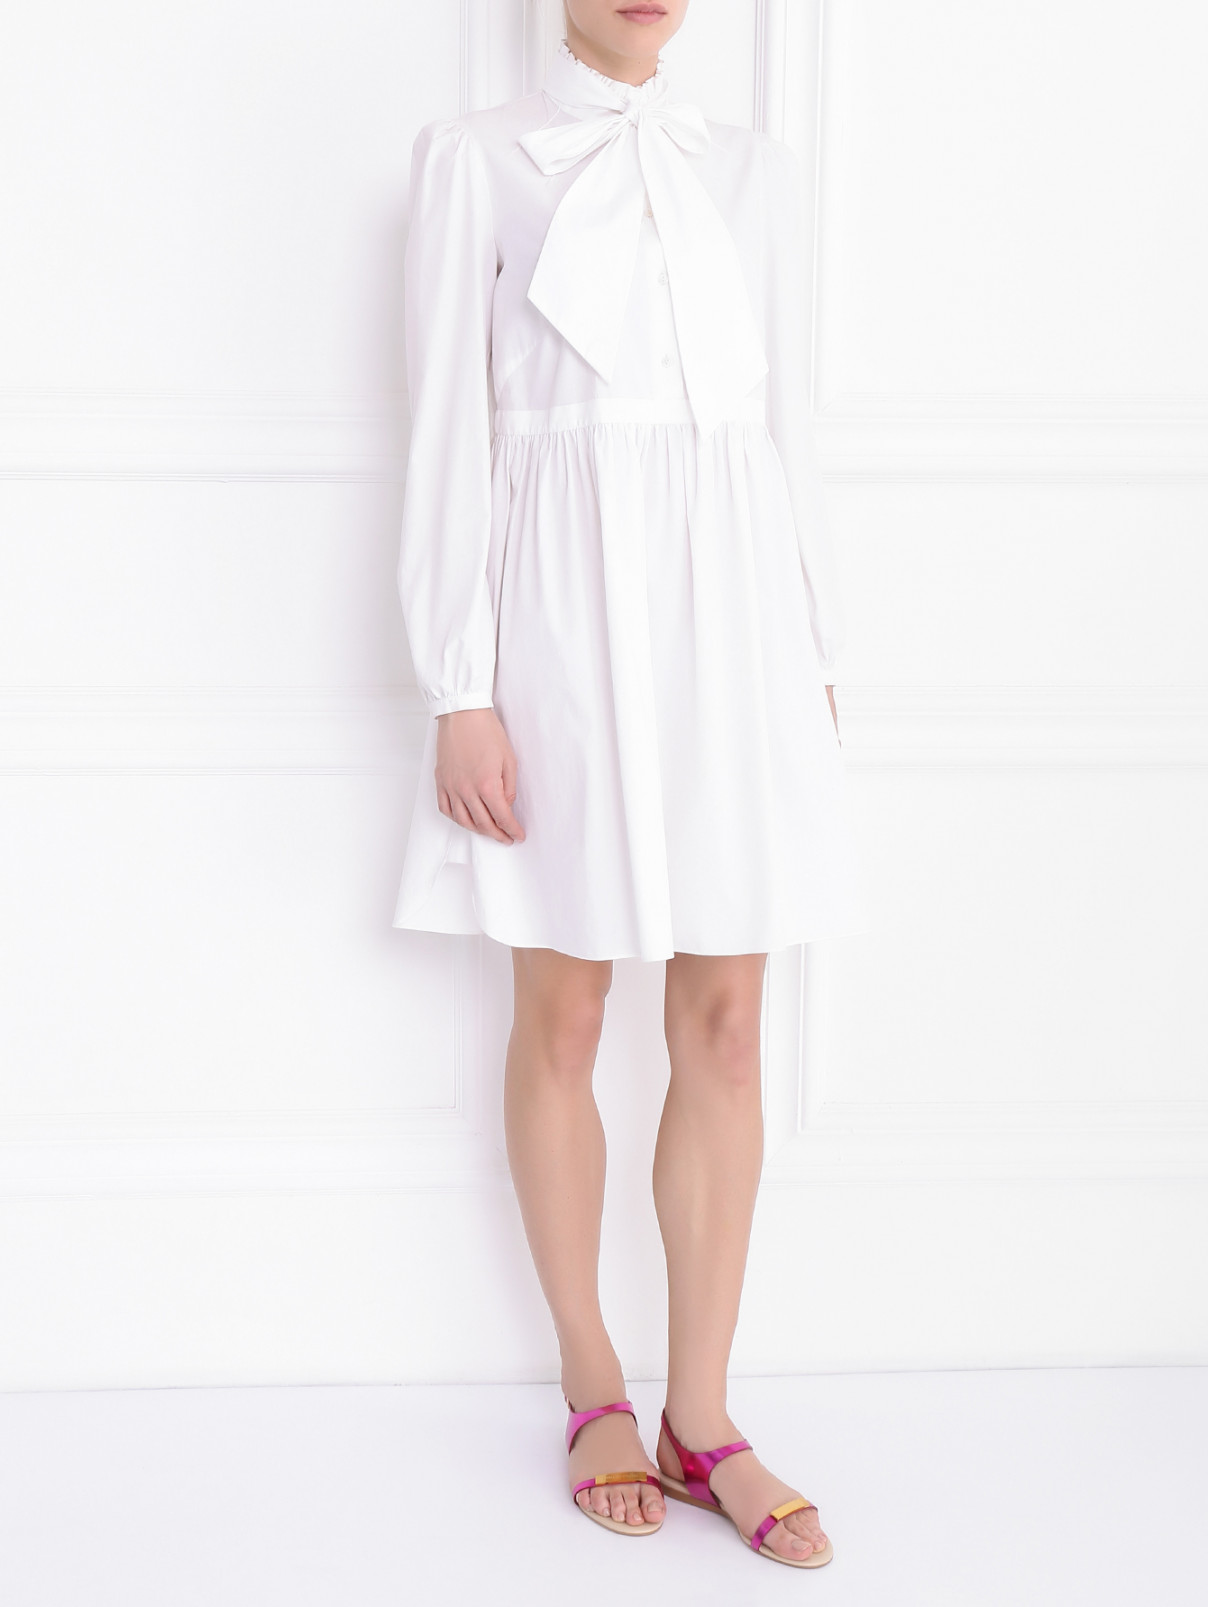 Платье из хлопка с длинным рукавом Antonio Marras  –  Модель Общий вид  – Цвет:  Белый